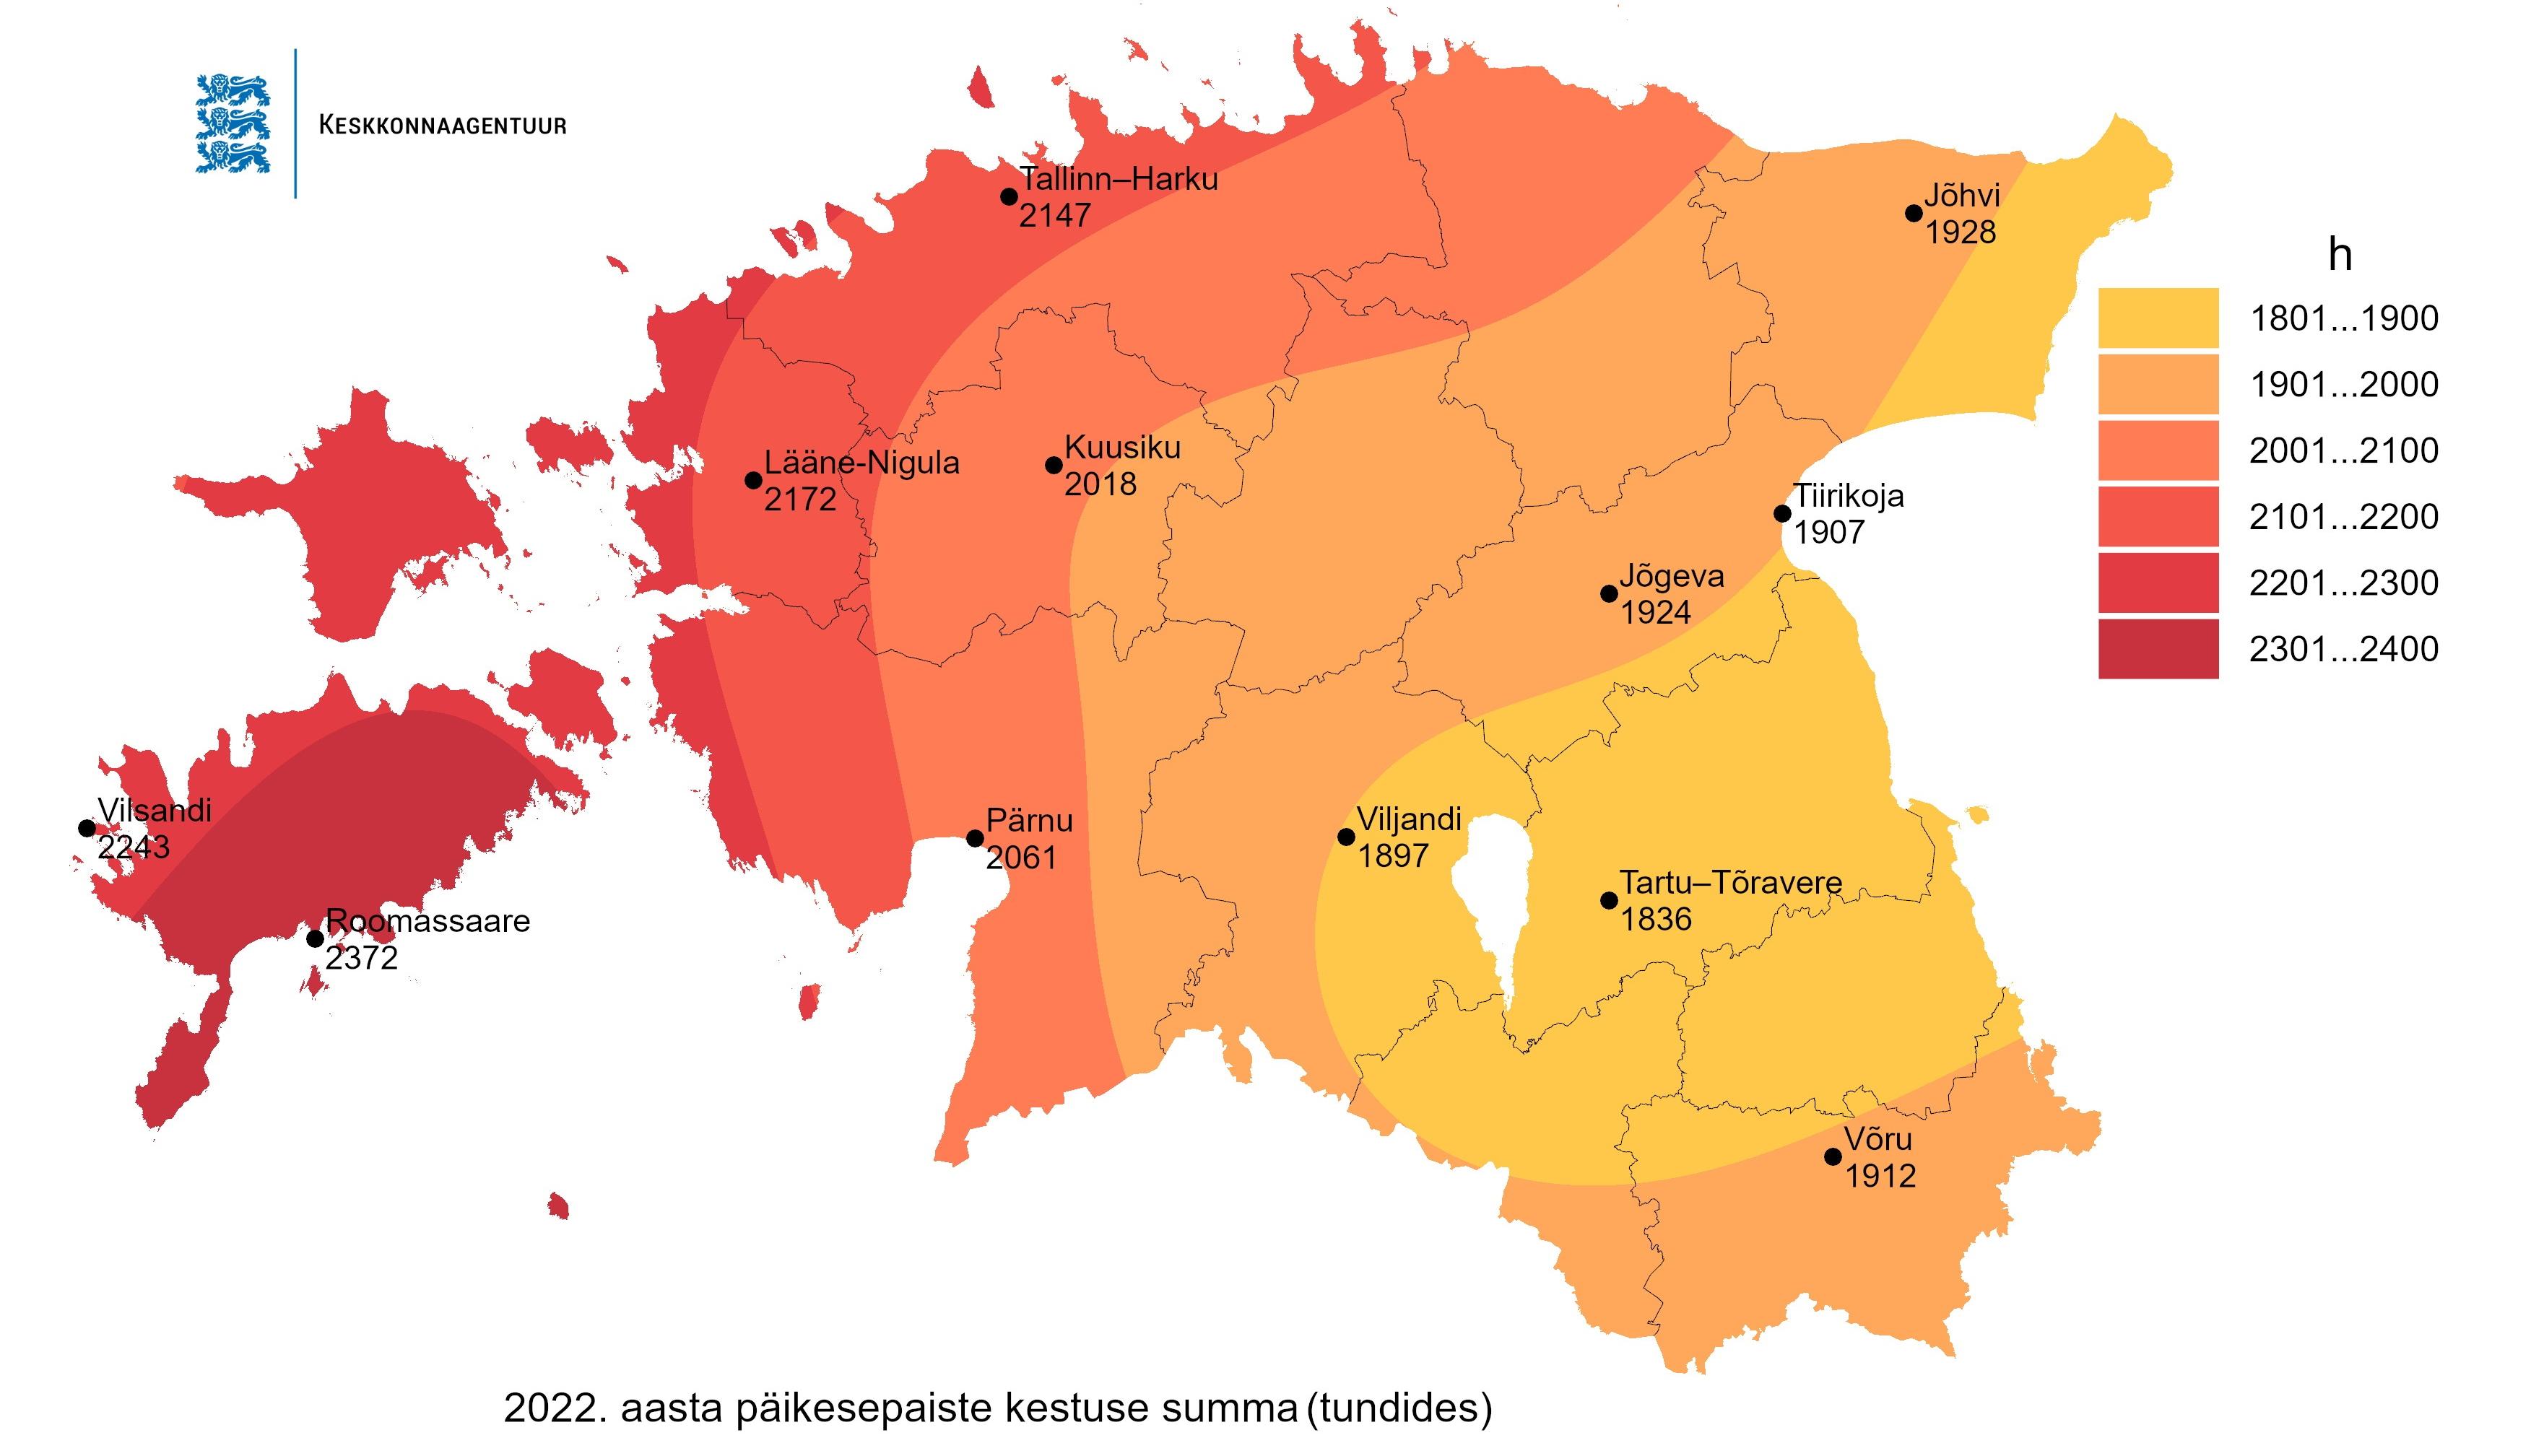 2022. aasta päikesepaiste kestus Eesti kaardil